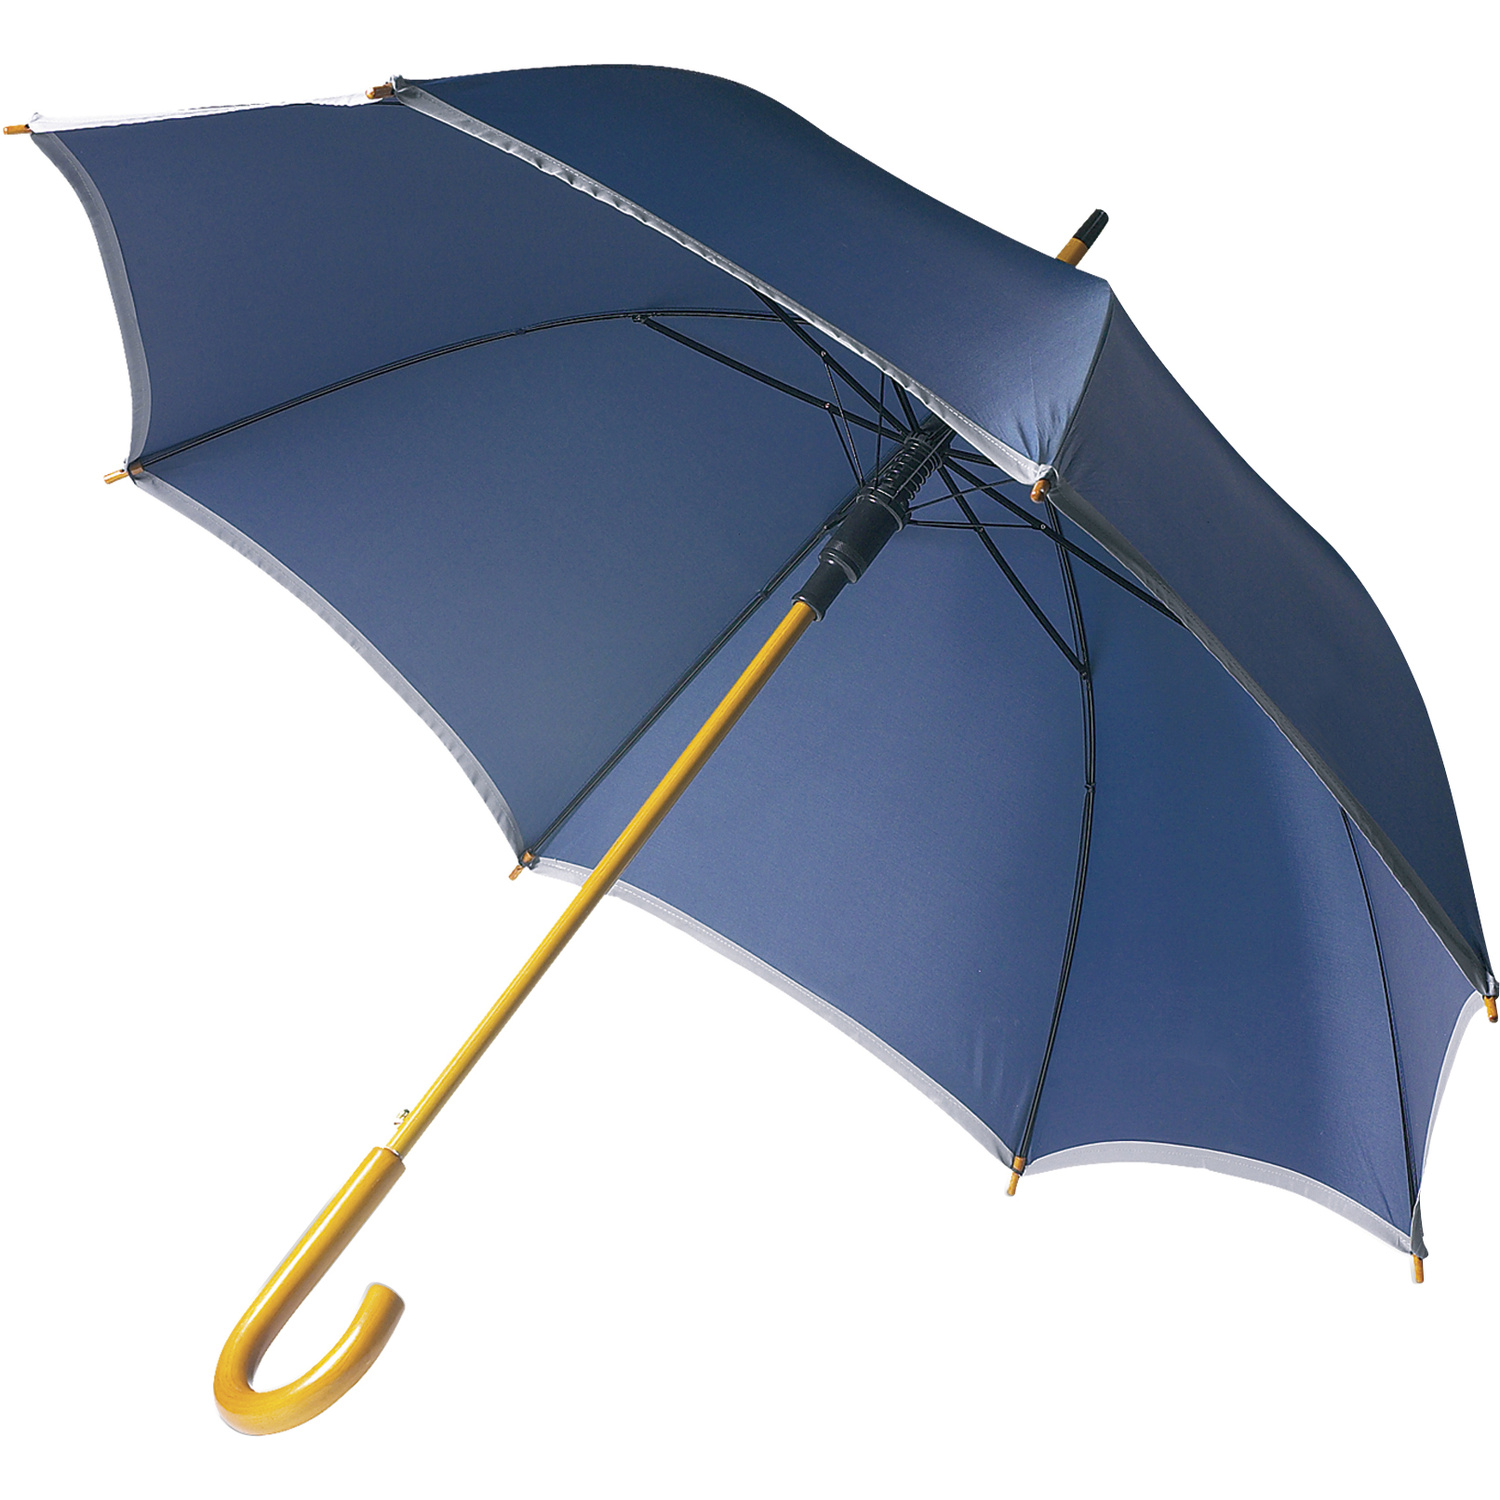 004068 005999999 3d045 ins pro01 fal - Umbrella with reflective border